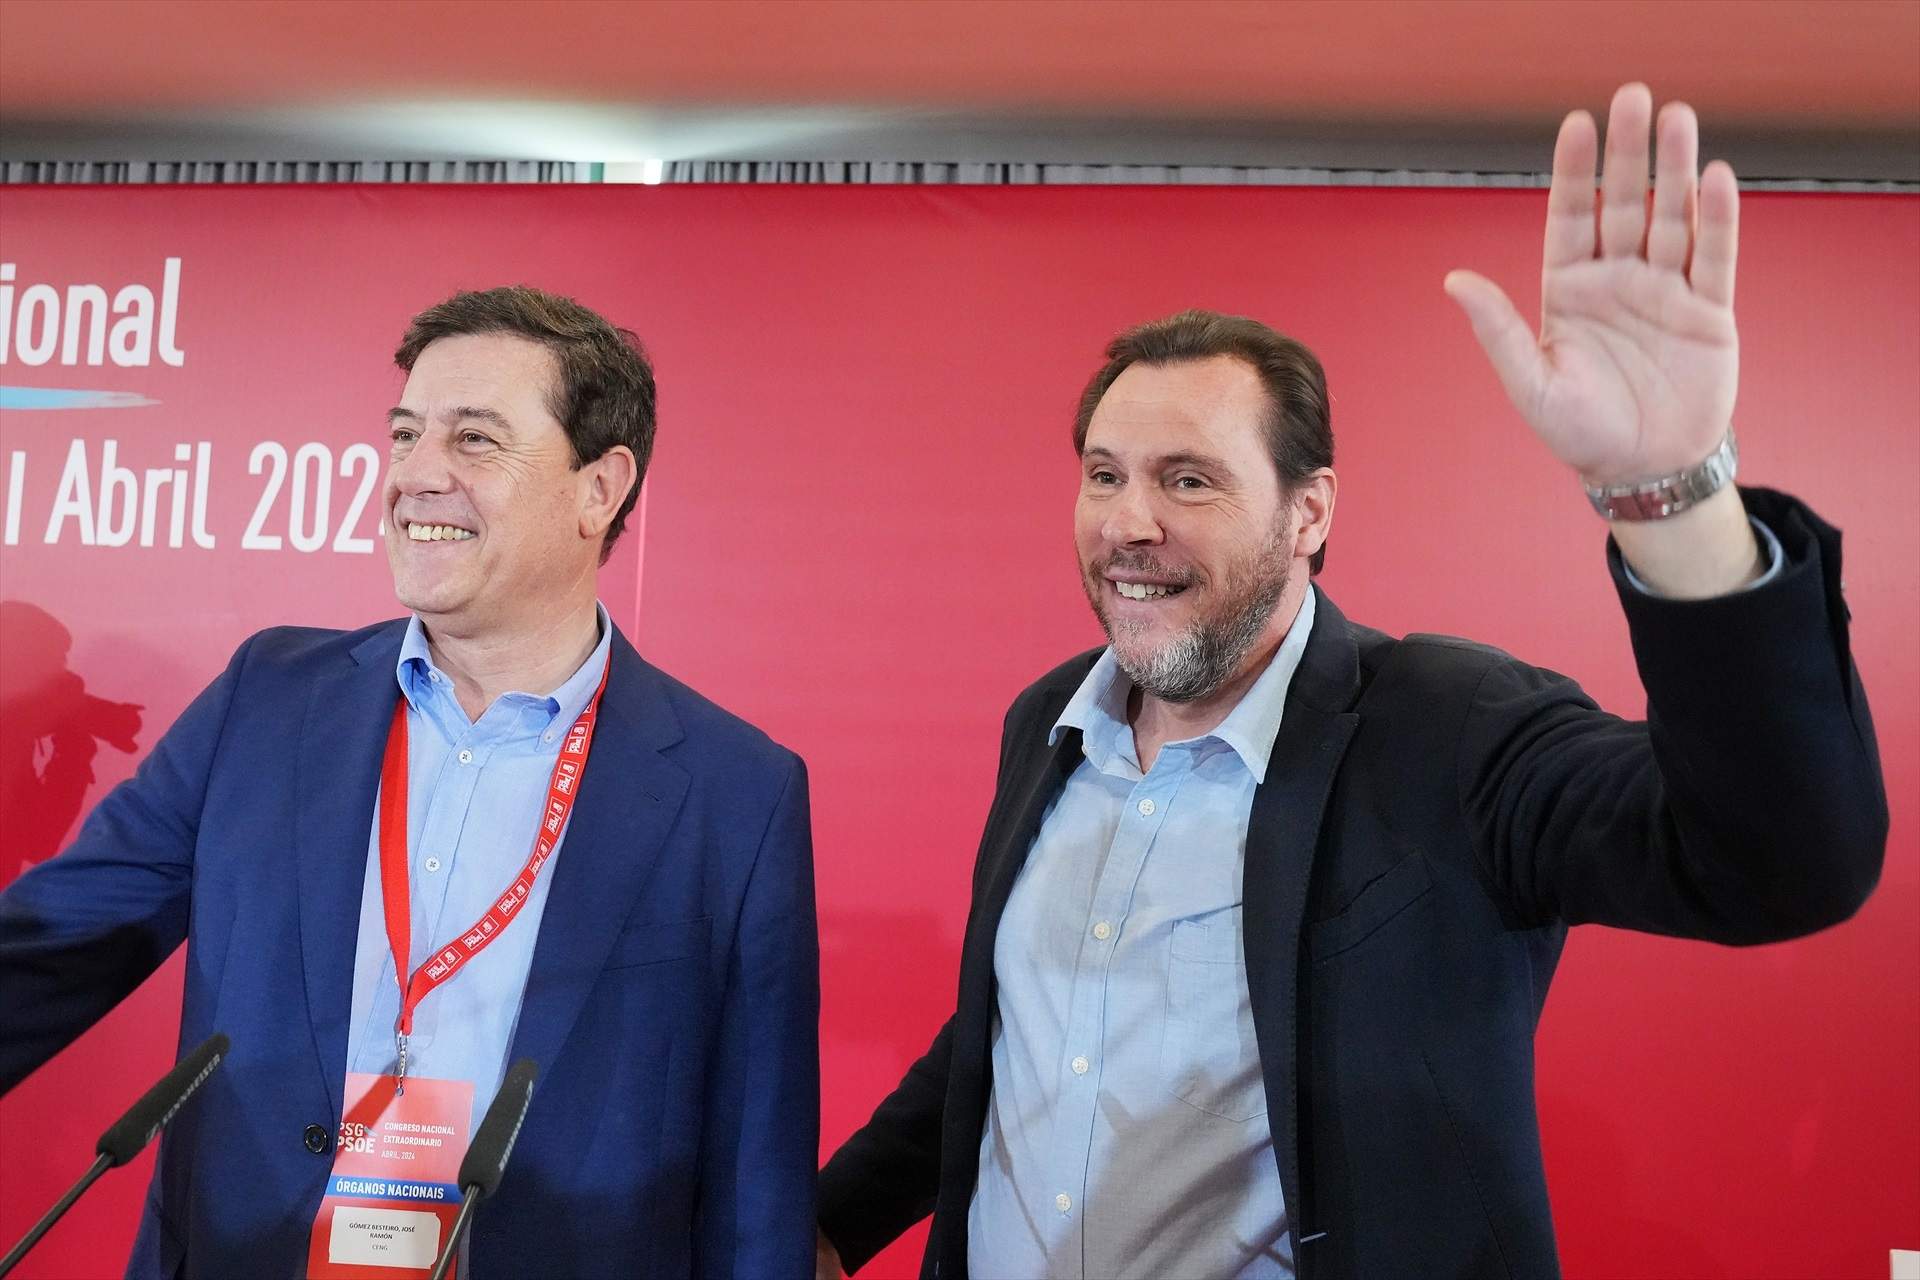 Unas declaraciones del ministro Puente alimentan las apuestas de una posible dimisión de Pedro Sánchez